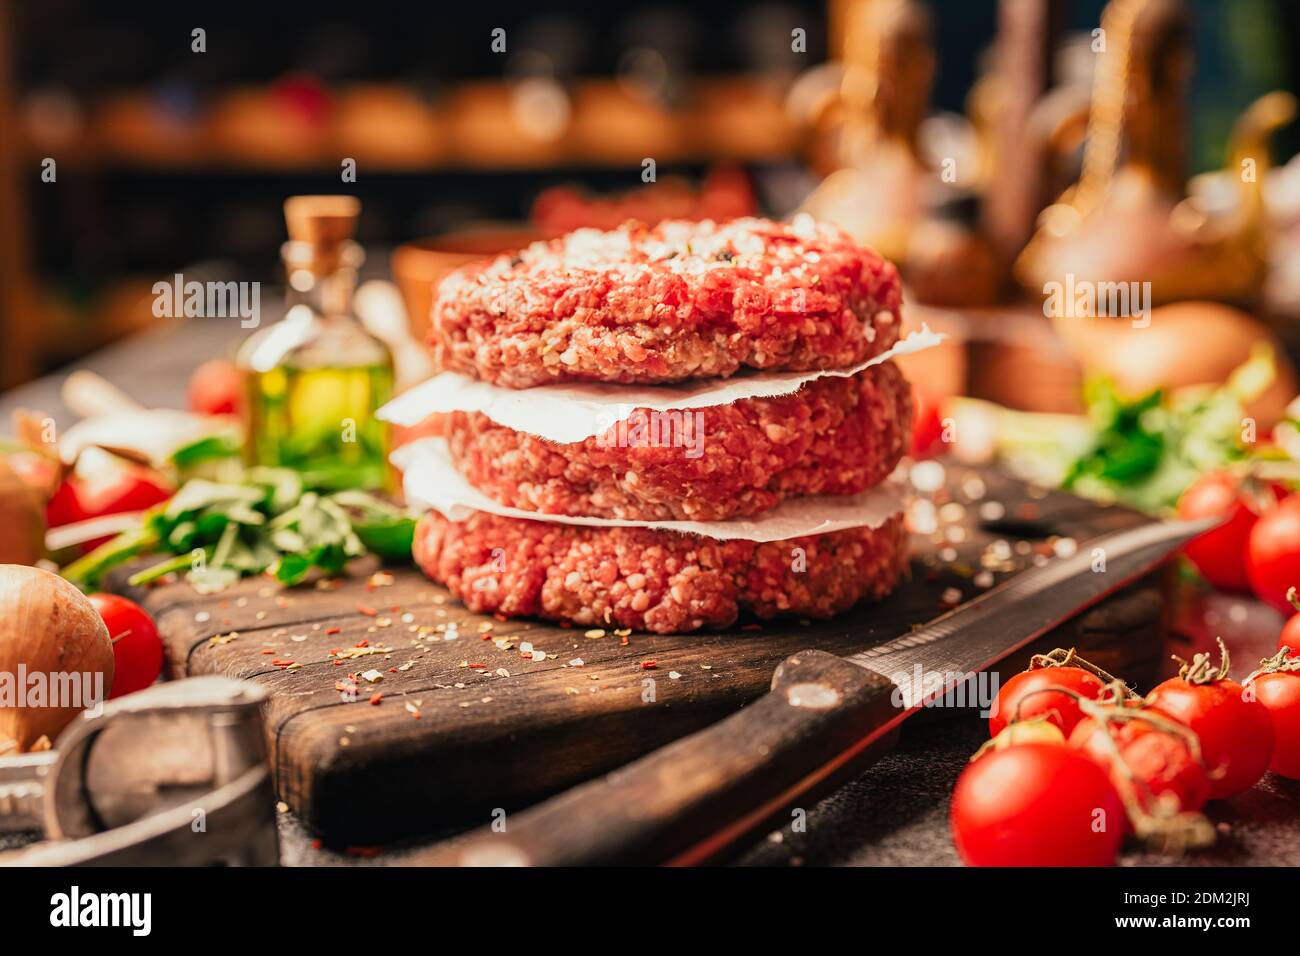 Hackfleisch-Hackfleisch-Hacksteaks aus Hackfleisch Vorbereitet für auf einer Platte.Hamburger Fleisch gewürzt und bereit für Ein Grill.Gewürze und Co Stockfoto